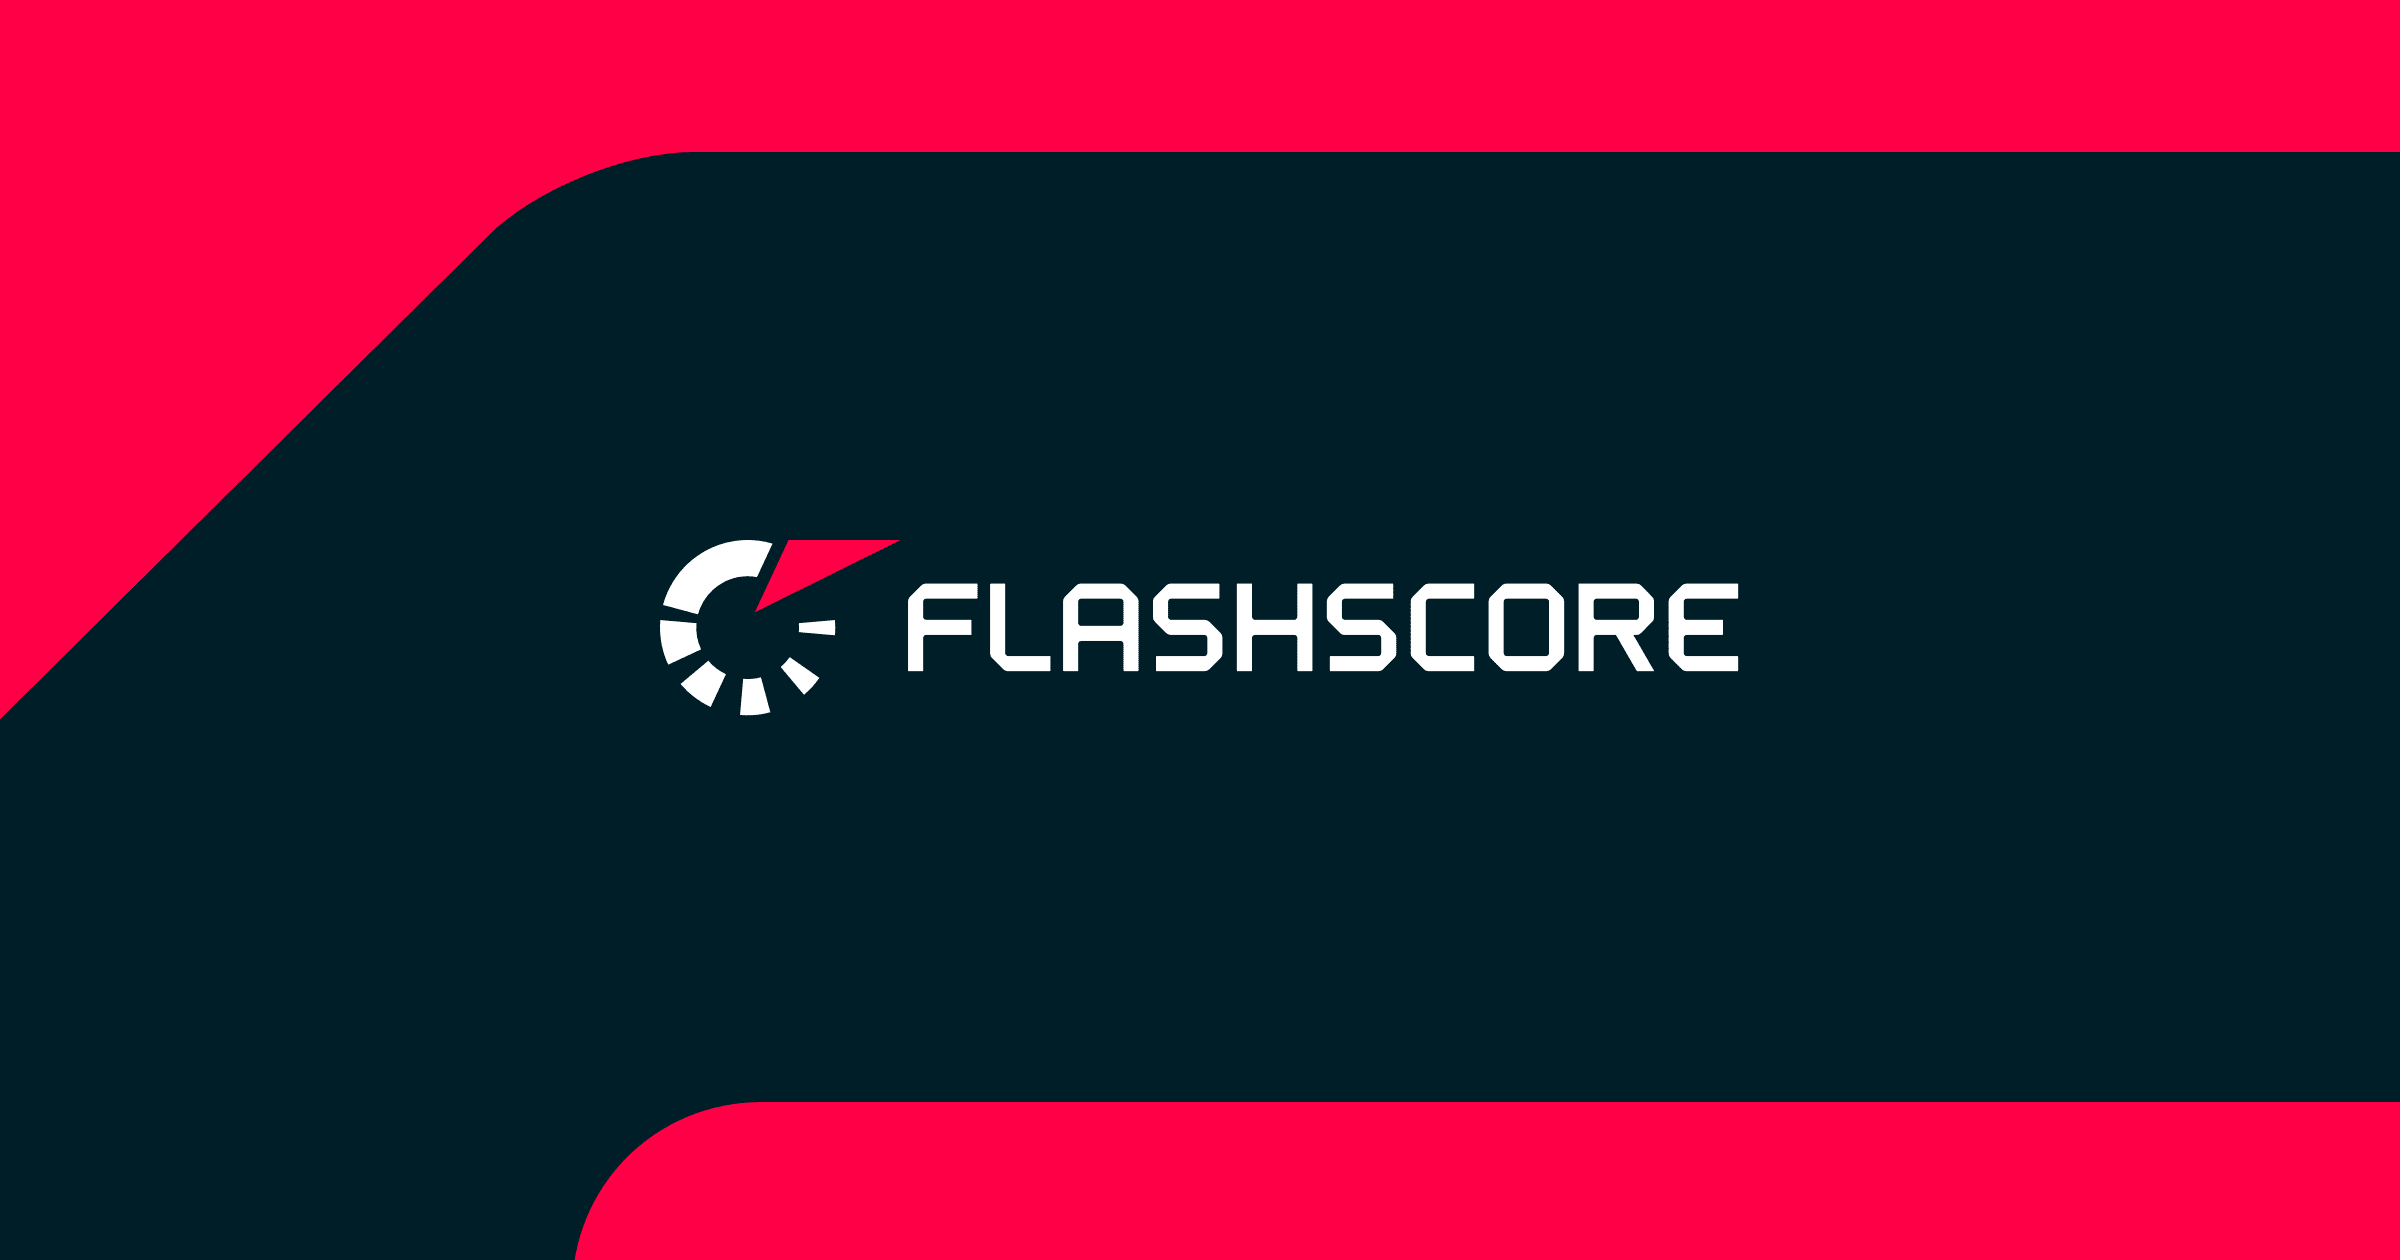 www.flashscore.co.uk